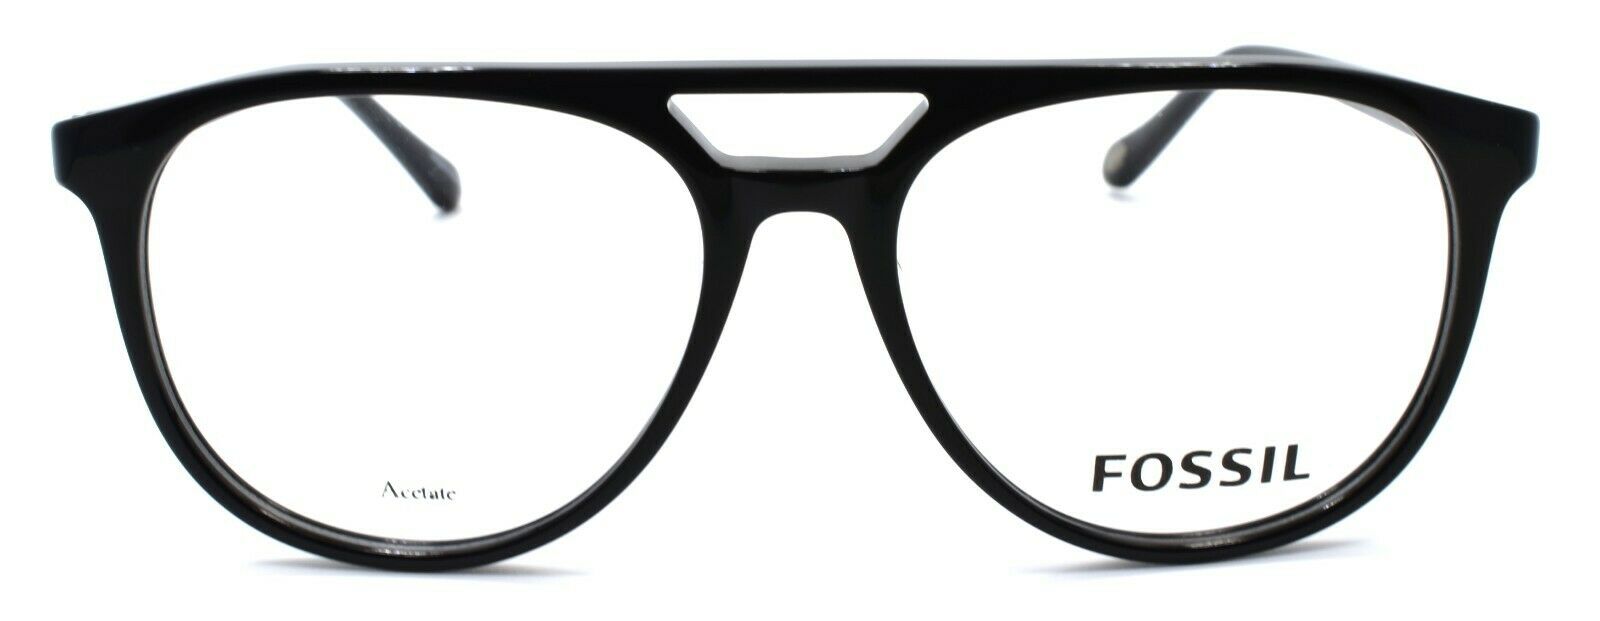 2-Fossil FOS 7054 807 Men's Eyeglasses Frames Aviator 53-16-145 Black-716736165875-IKSpecs